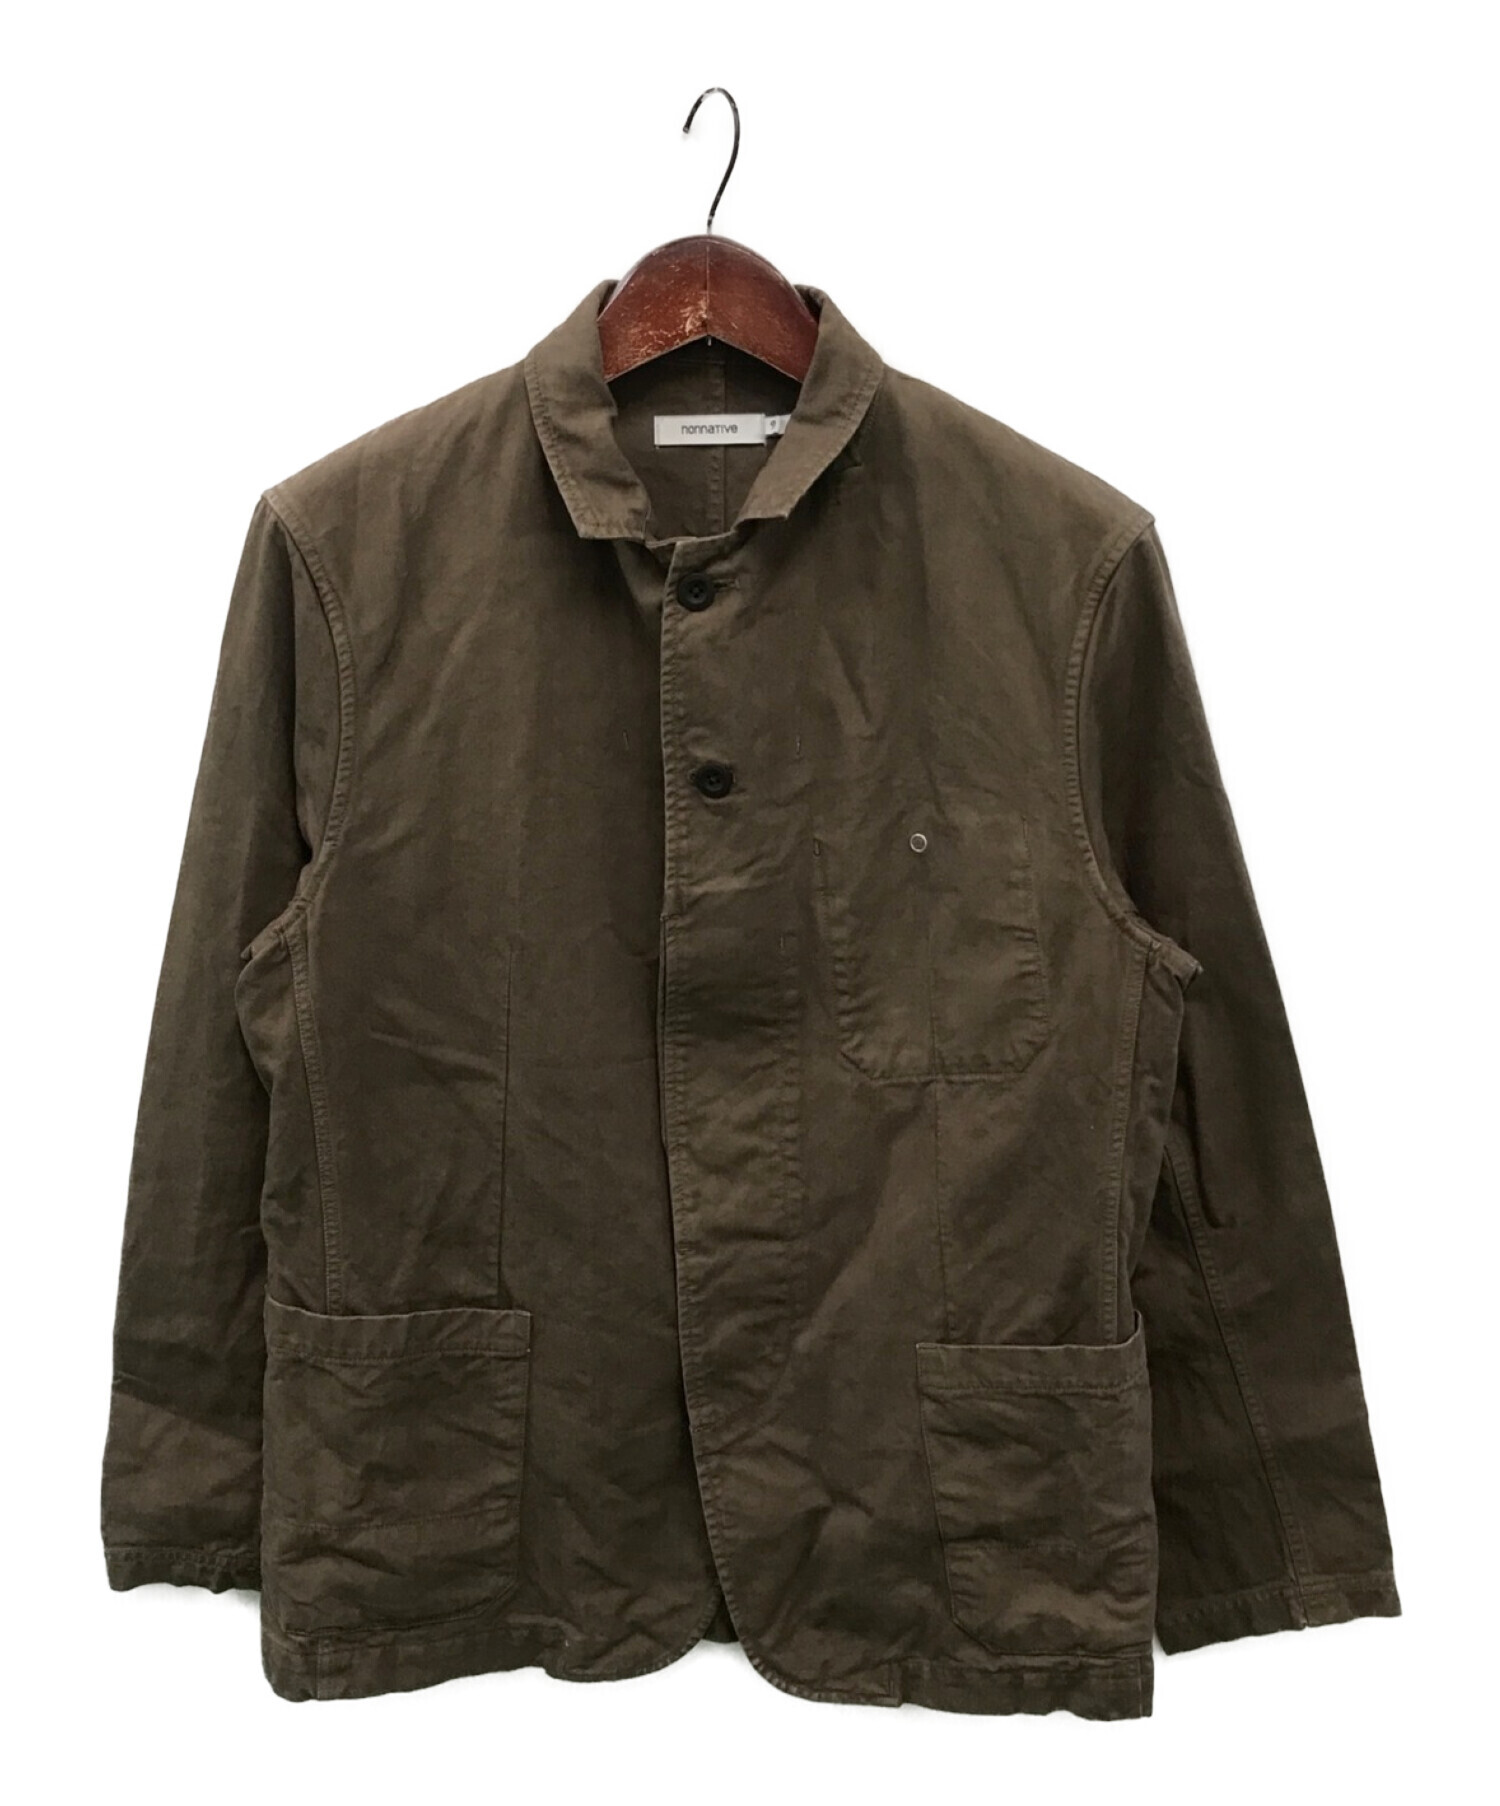 nonnative (ノンネイティブ) DWELLER JACKET COTTON CHINO CLOTH OVERDYED ブラウン サイズ:2